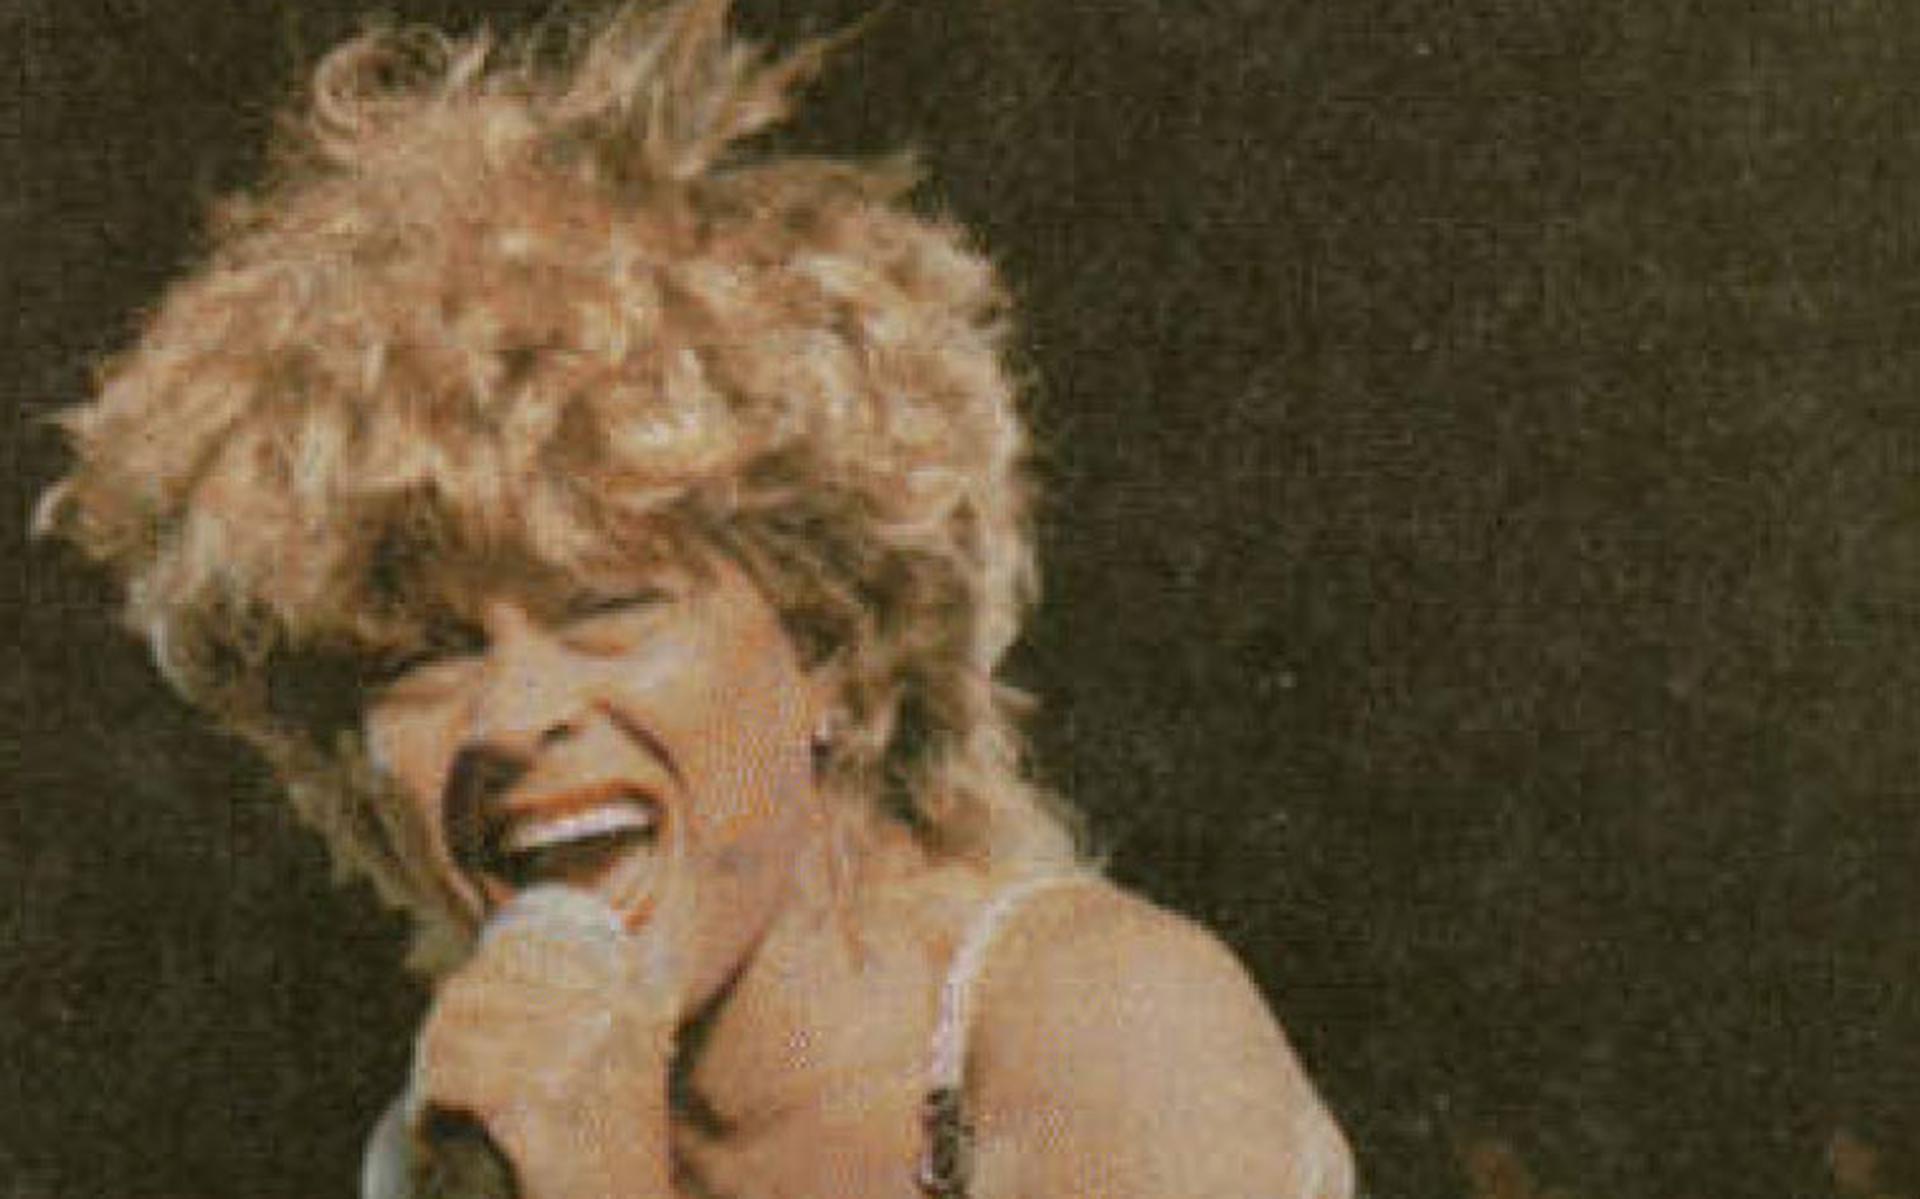 Felbegeerde Sfeer In Thialf Heerenveen In 1996 Tina Turner Onvermoeibaar Als Altijd 4216